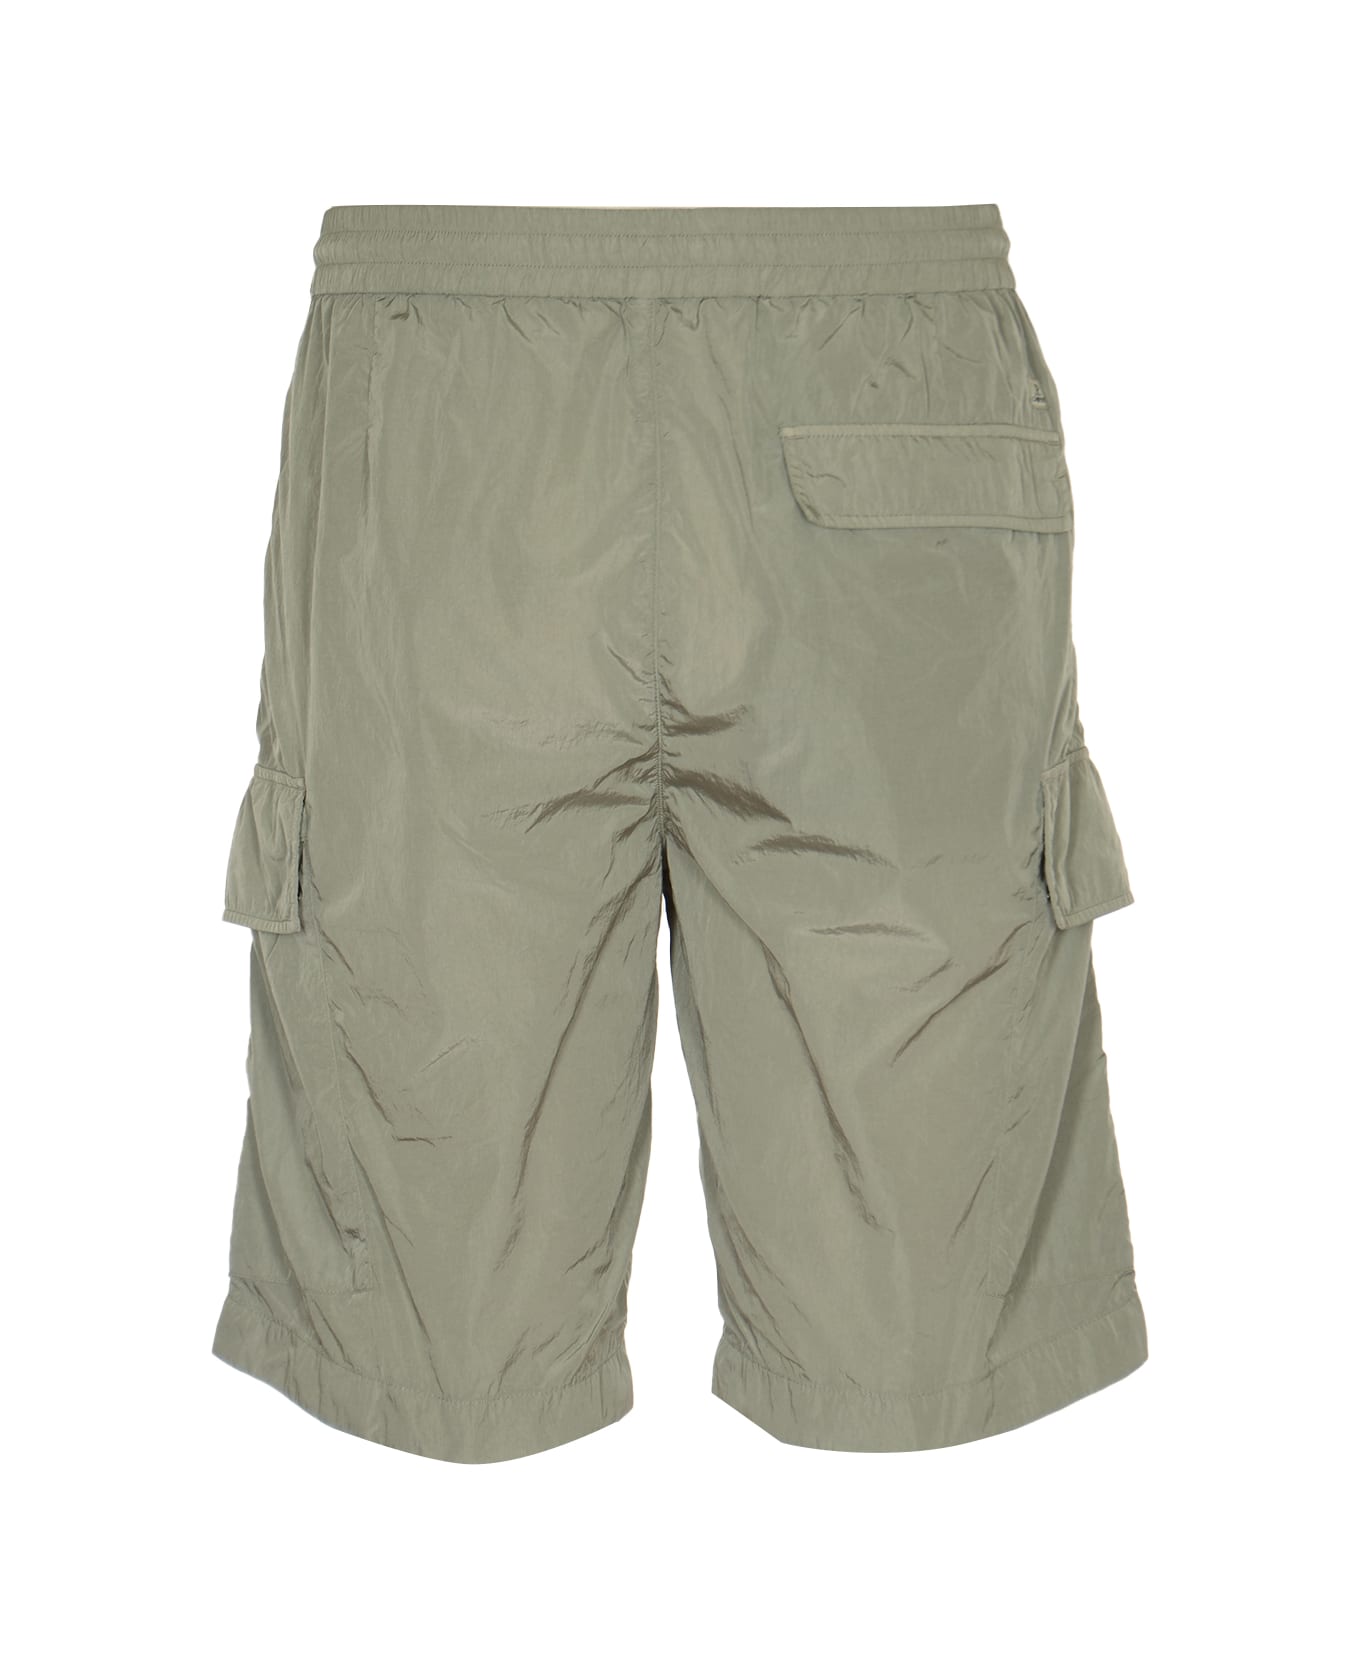 C.P. Company Chrome-r Bermuda Shorts - Drizzle